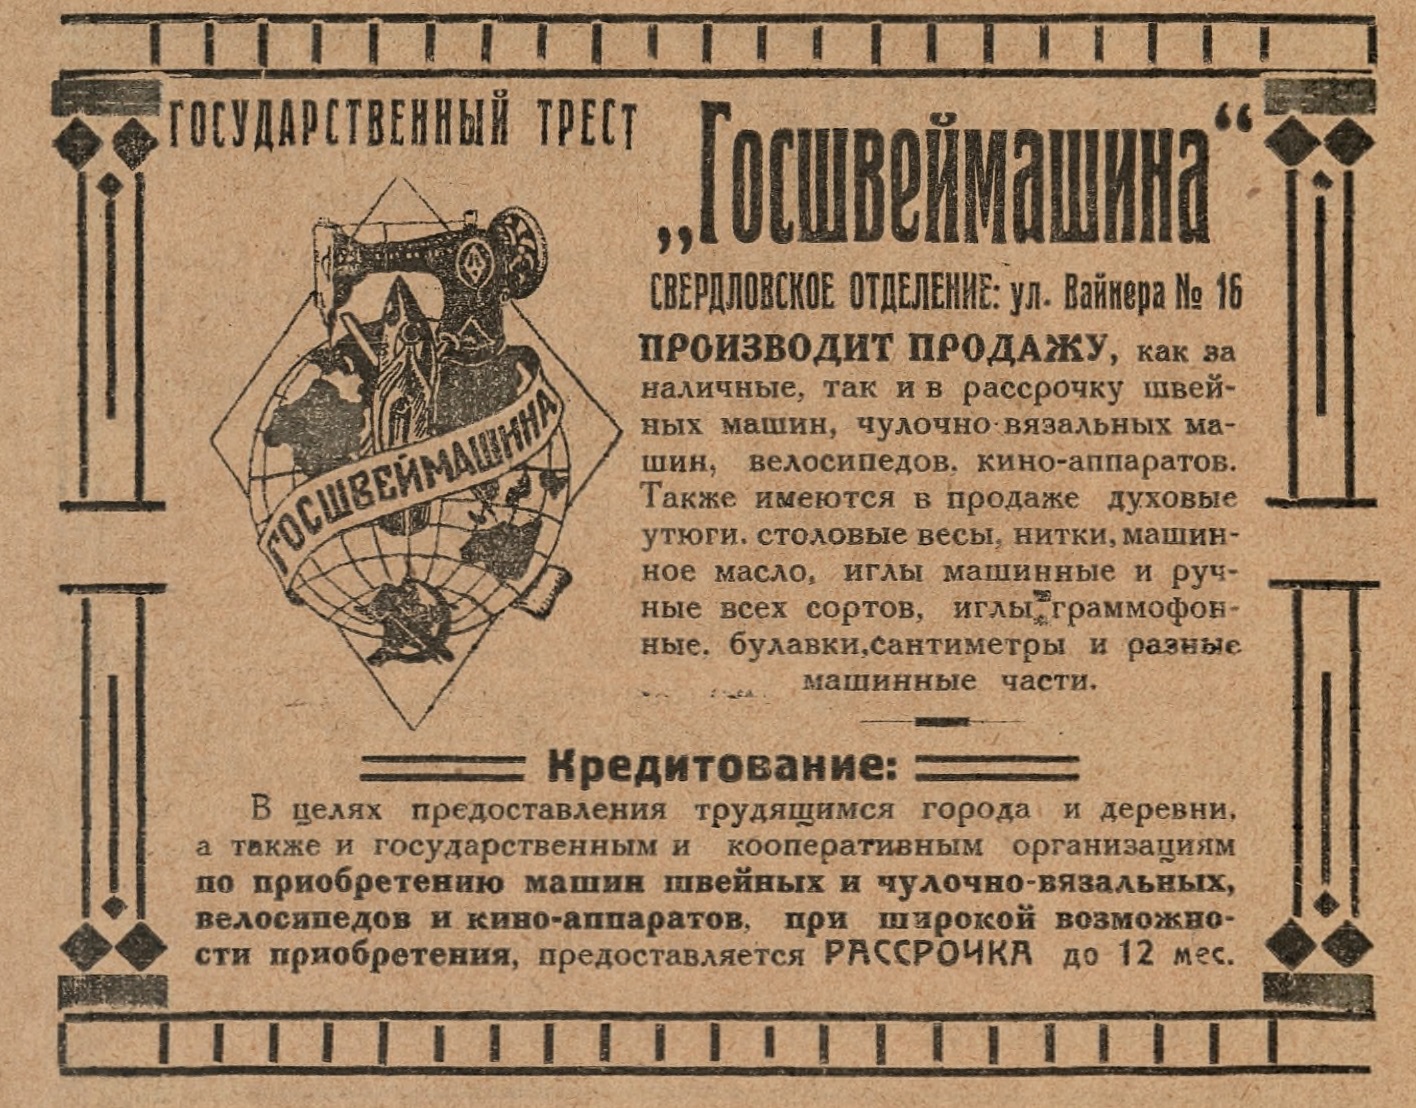 Реклама Госшвеймашины (граммофонные иглы)